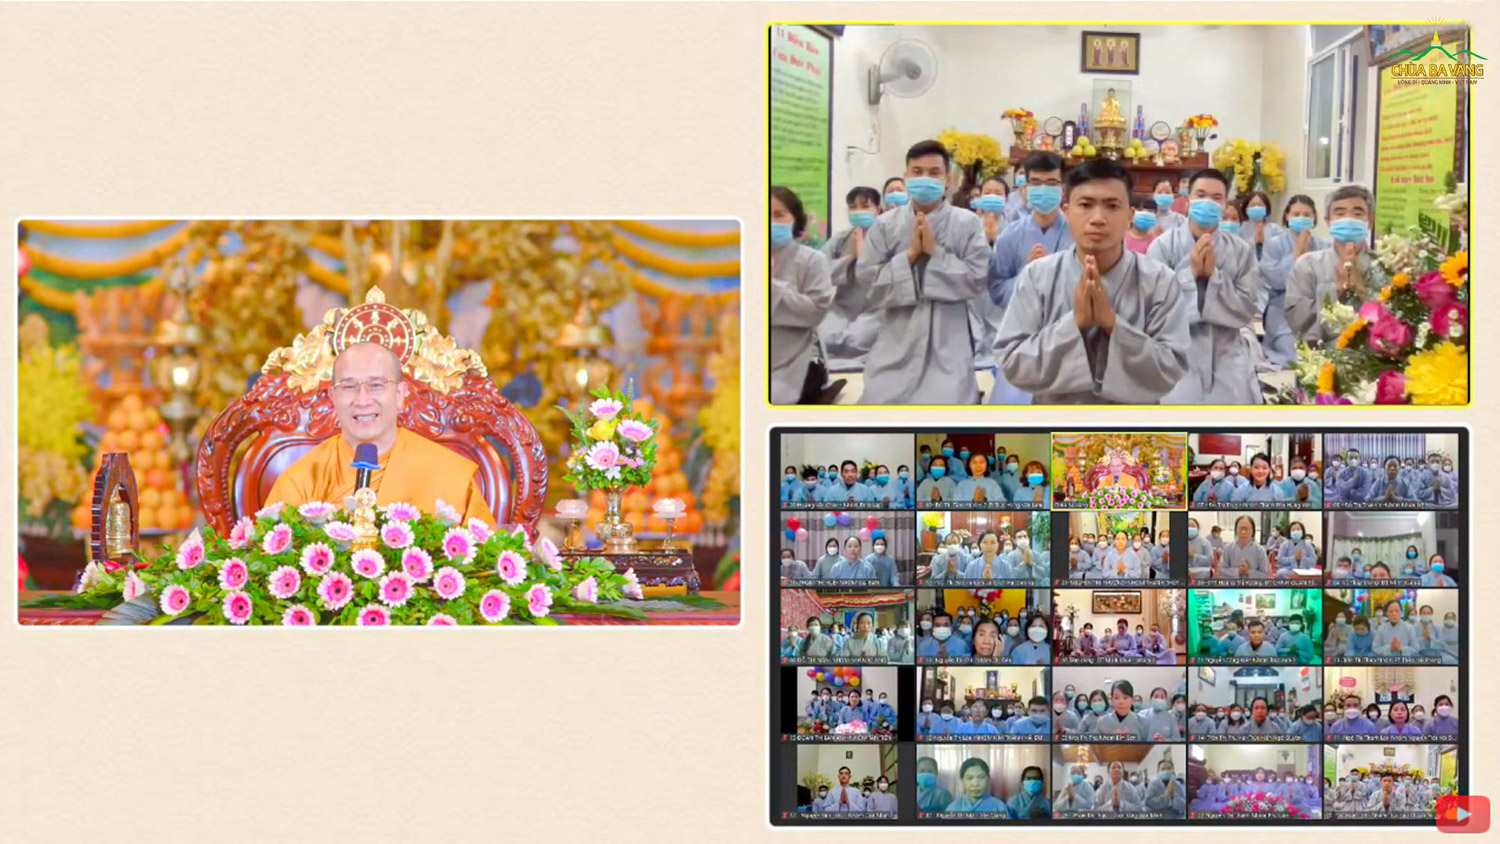 Trong ngày tu Bát Quan trai cuối cùng của năm, 23 đạo tràng mới được Sư Phụ Thích Trúc Thái Minh chứng minh thành lập, nâng tổng số đạo tràng chùa Ba Vàng được thành lập mới trong năm Tân Sửu là 87 đạo tràng.